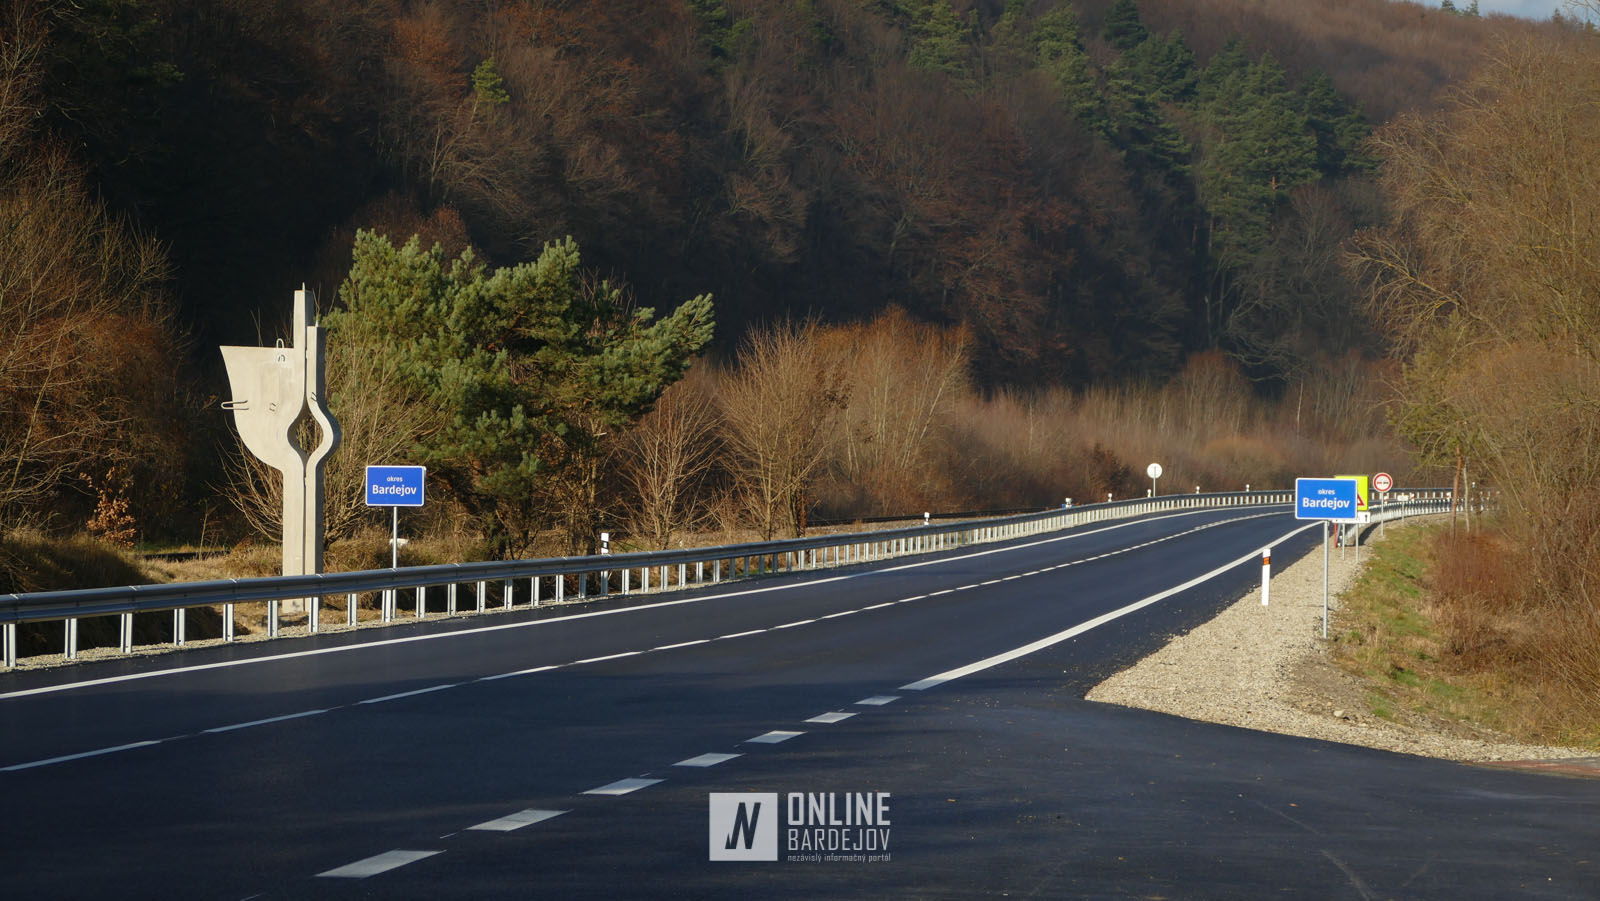 Ďalší zrekonštruovaný úsek je dokončený! Cestný úsek Demjata-Raslavice bude do užívania odovzdaný 22. novembra.